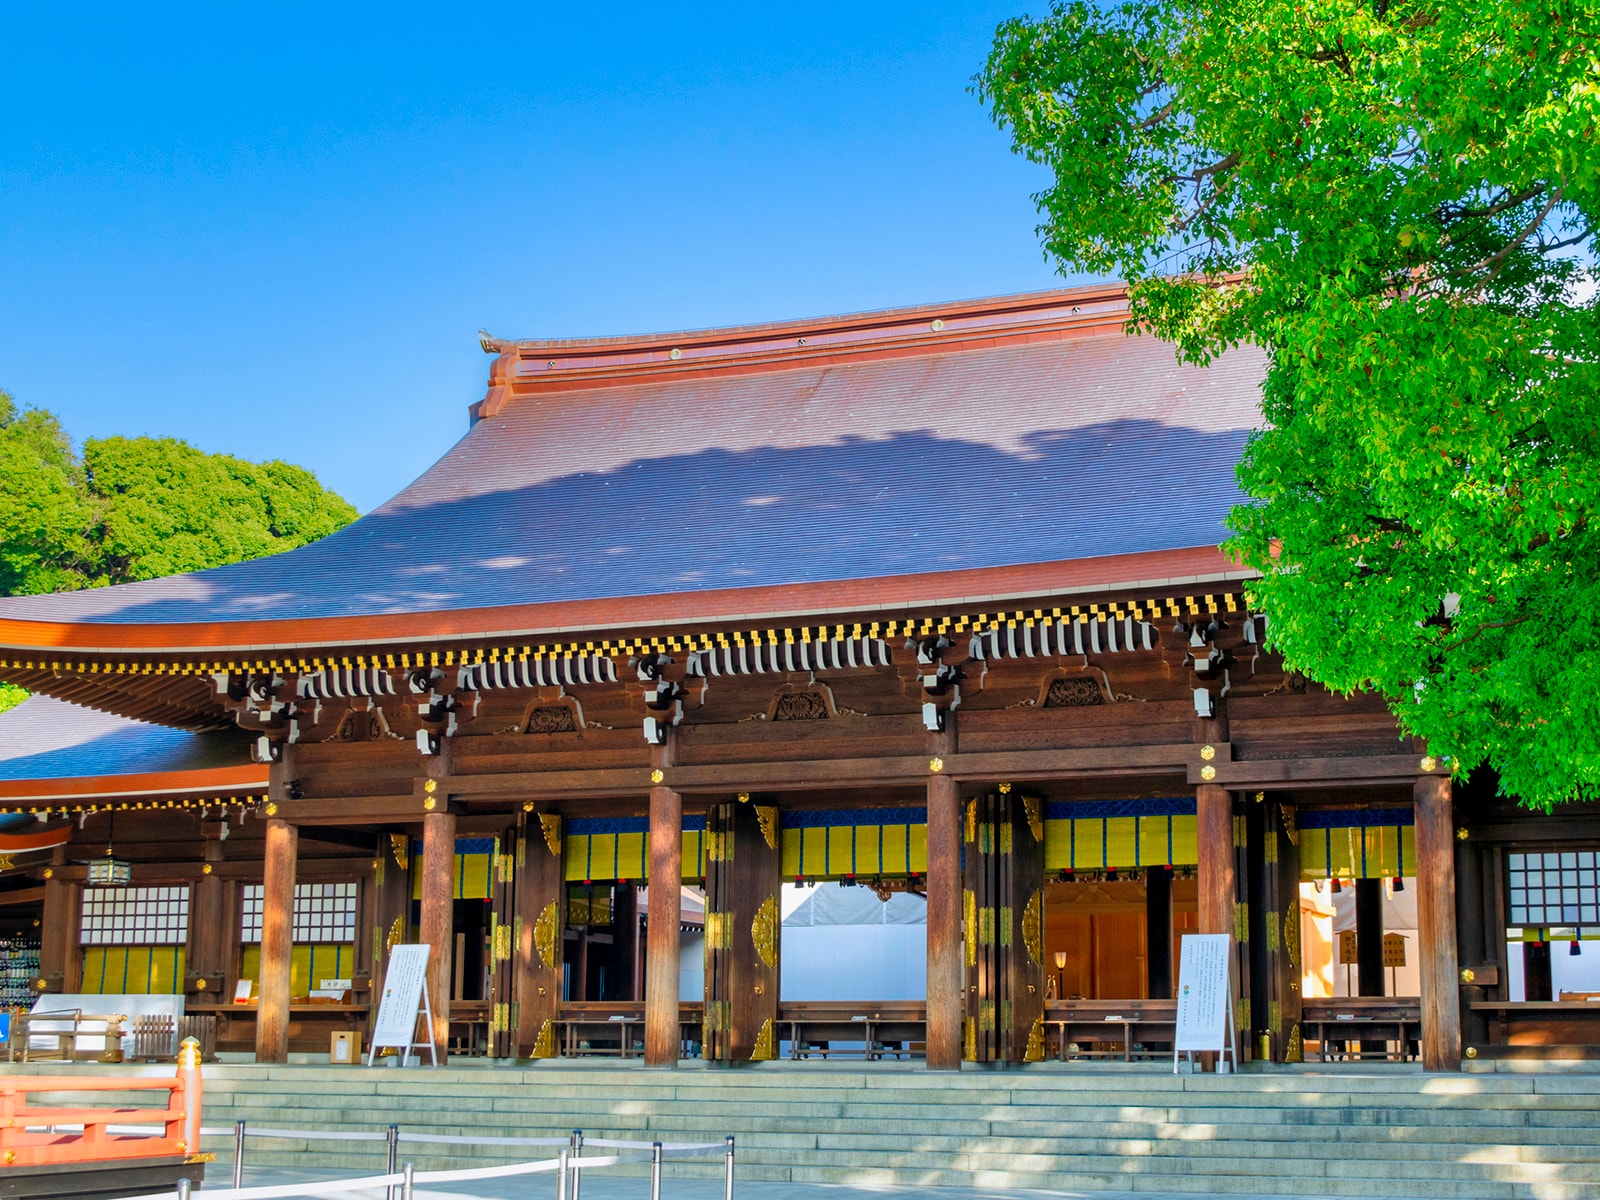 5月の旅行で行きたい「関東の神社・寺院」ランキング